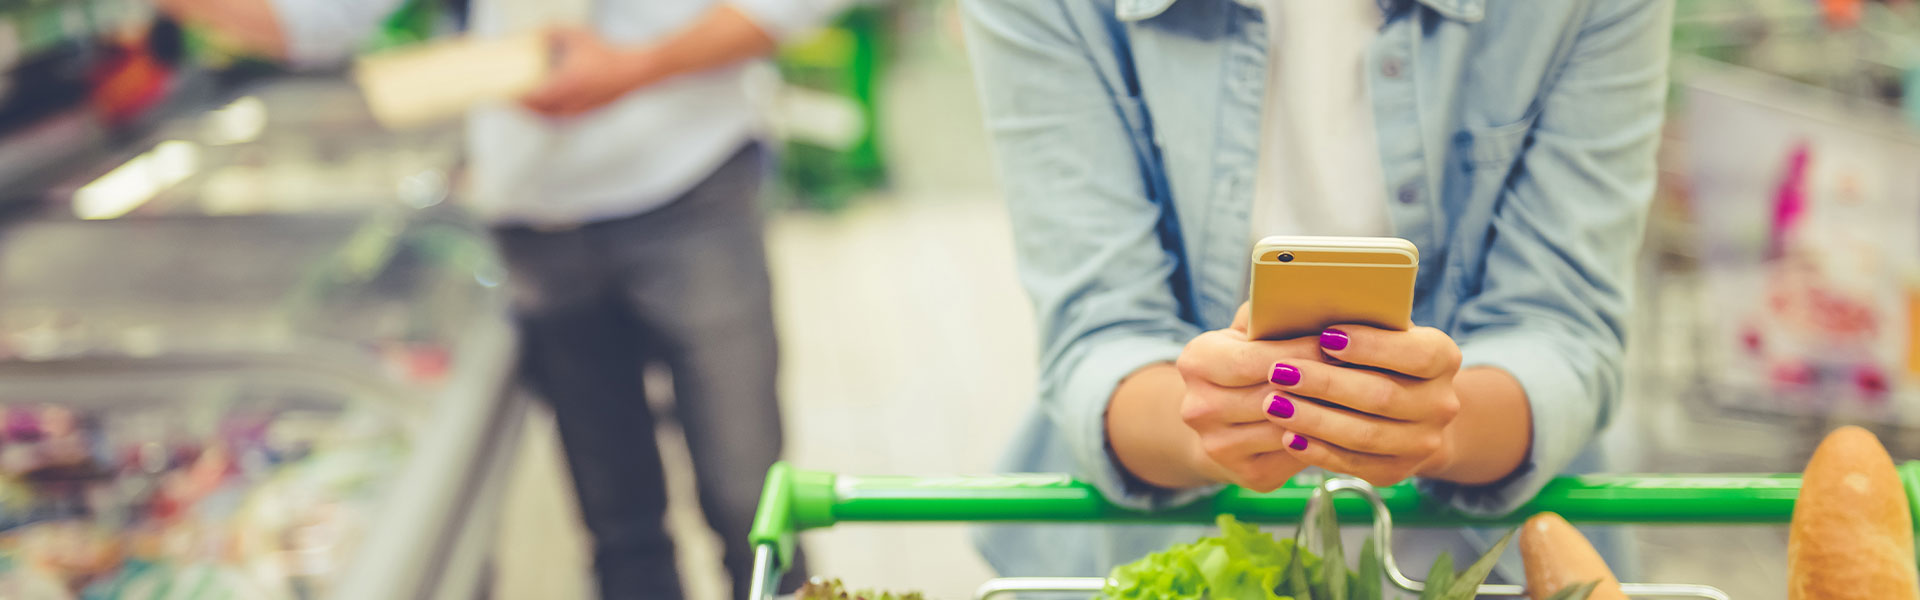 Mit dem NPS Kundenzufriedenheit ermitteln. Eine Frau ist im Supermarkt mit einem Einkaufswagen voller Gemüse und hat ihr Handy in der Hand.